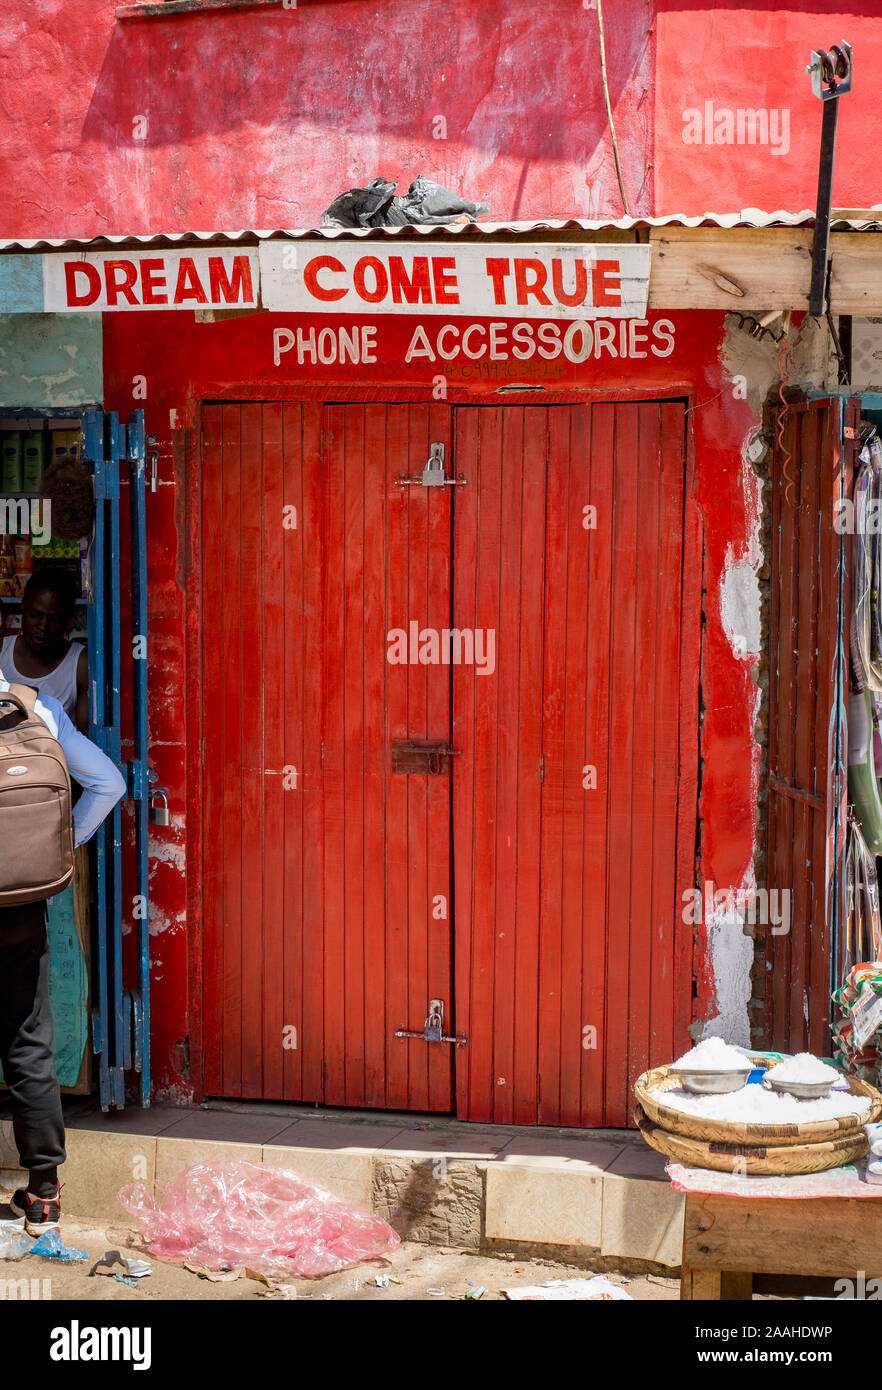 Dream come true phone accessories - shop in Mzuzu market, Malawi Stock Photo